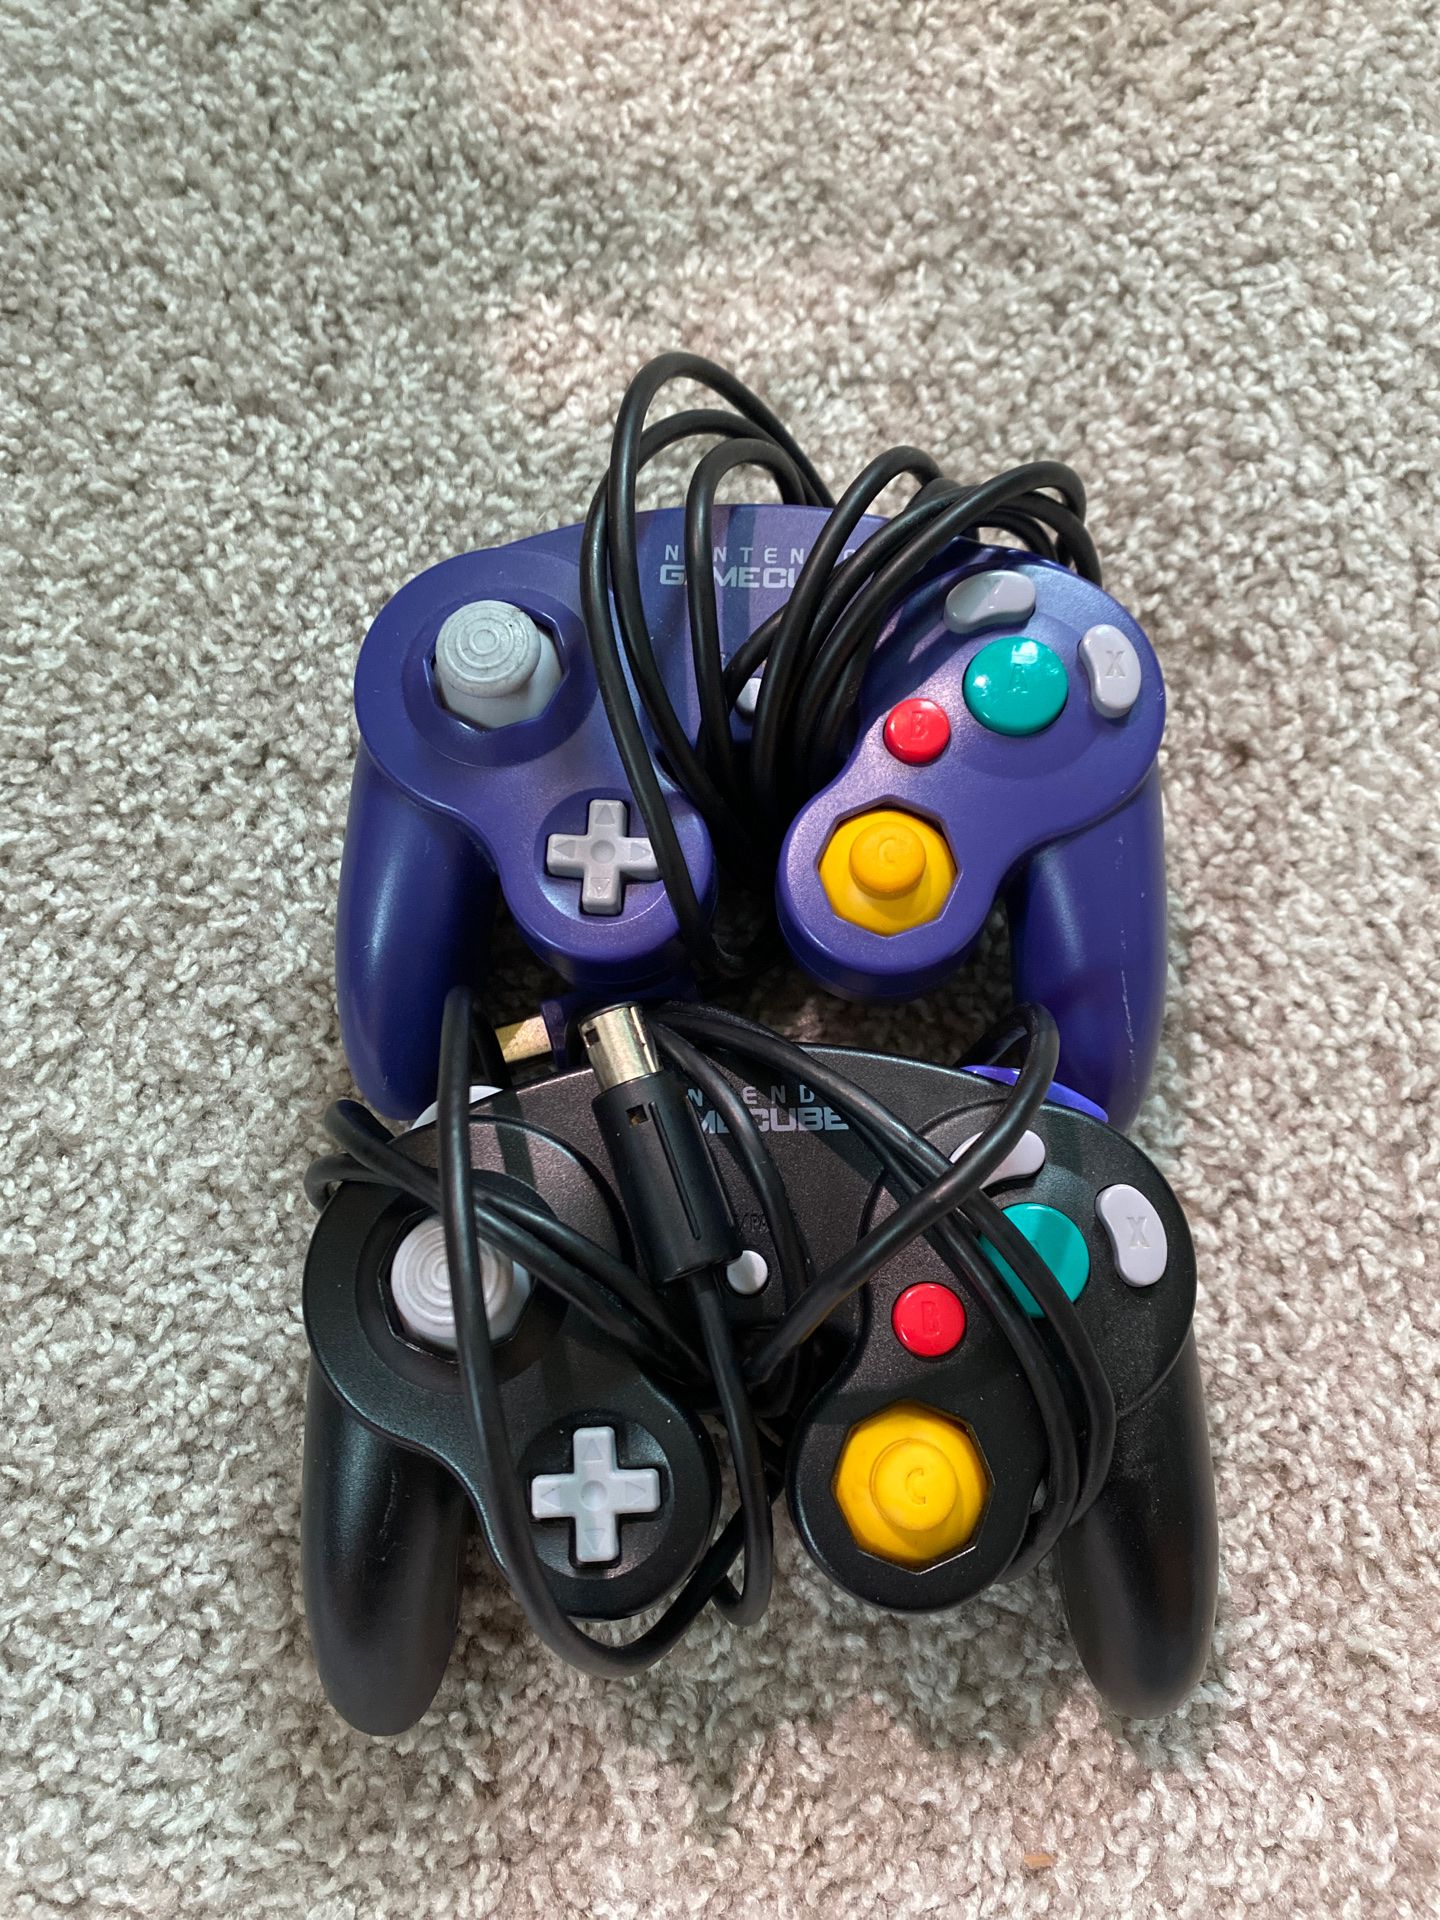 Original GameCube controllers